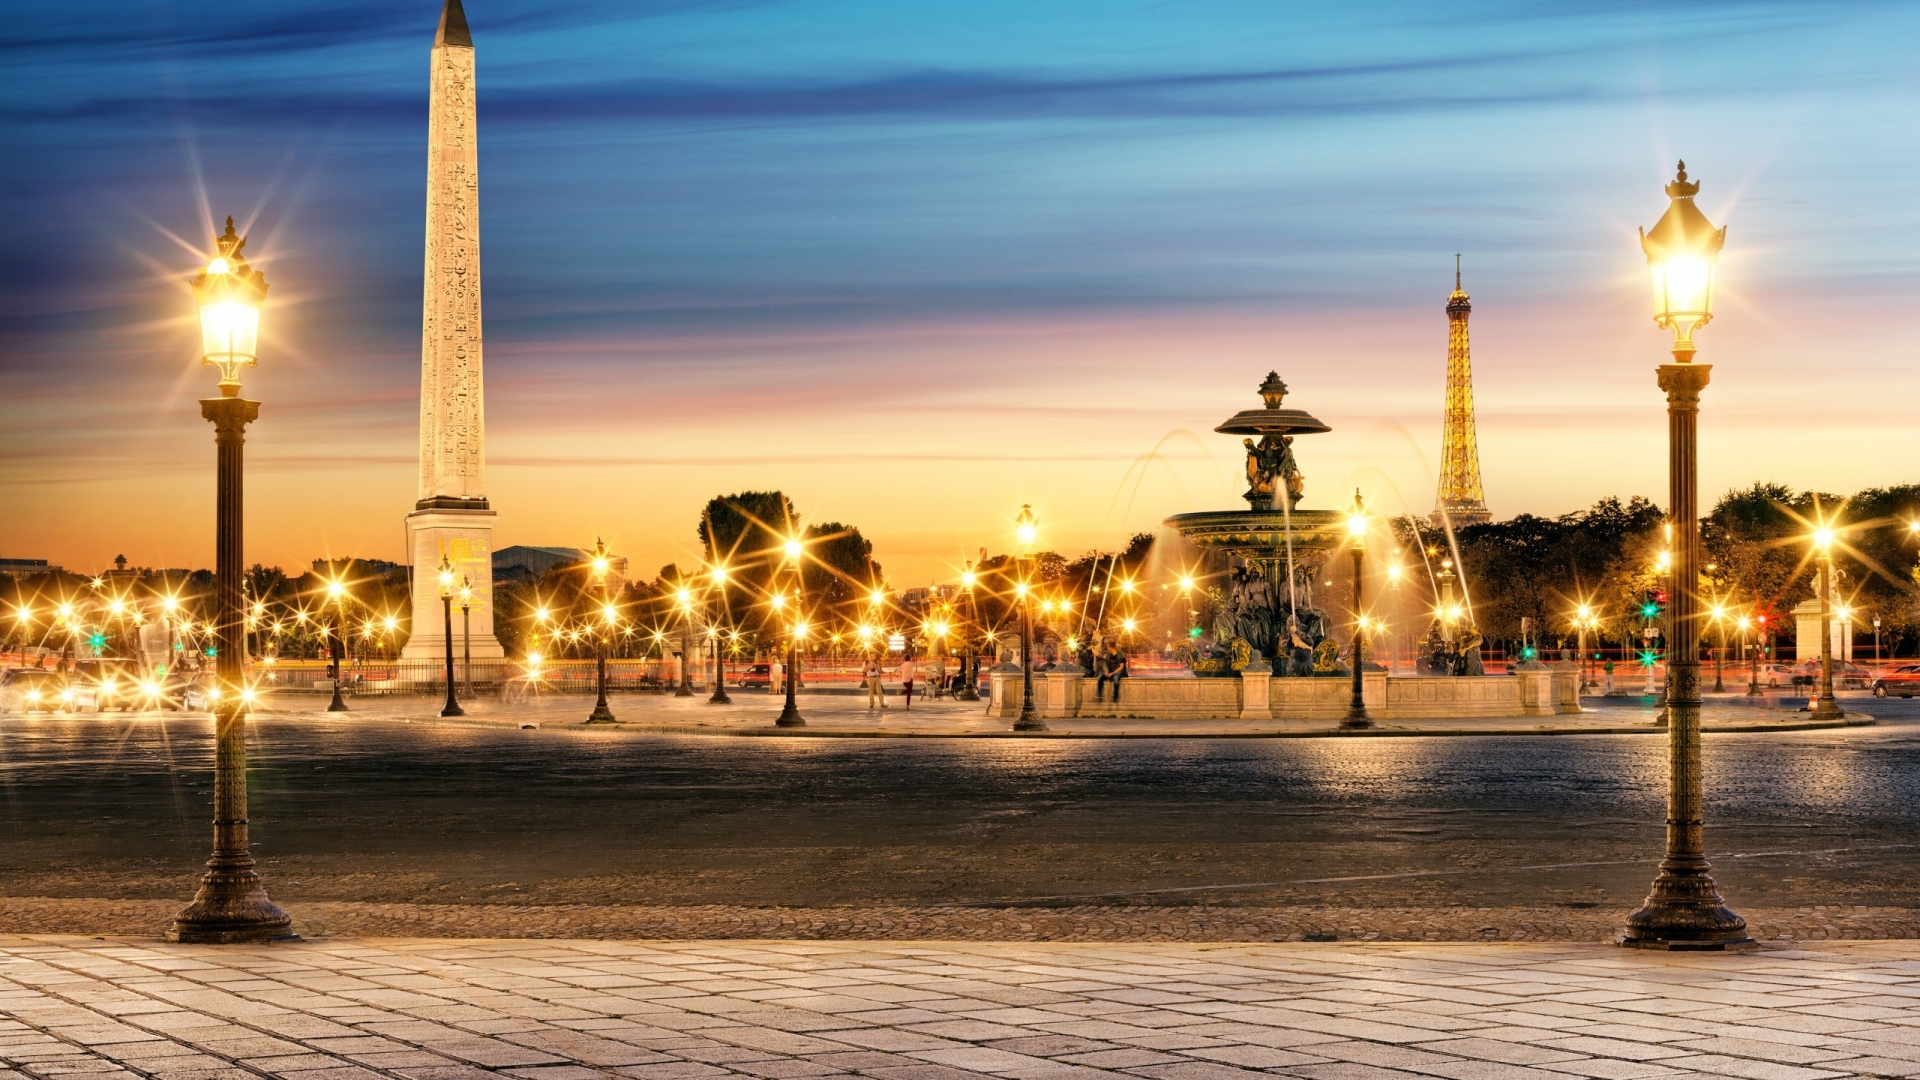 The Luxor Obelisk Paris for 1920 x 1080 HDTV 1080p resolution